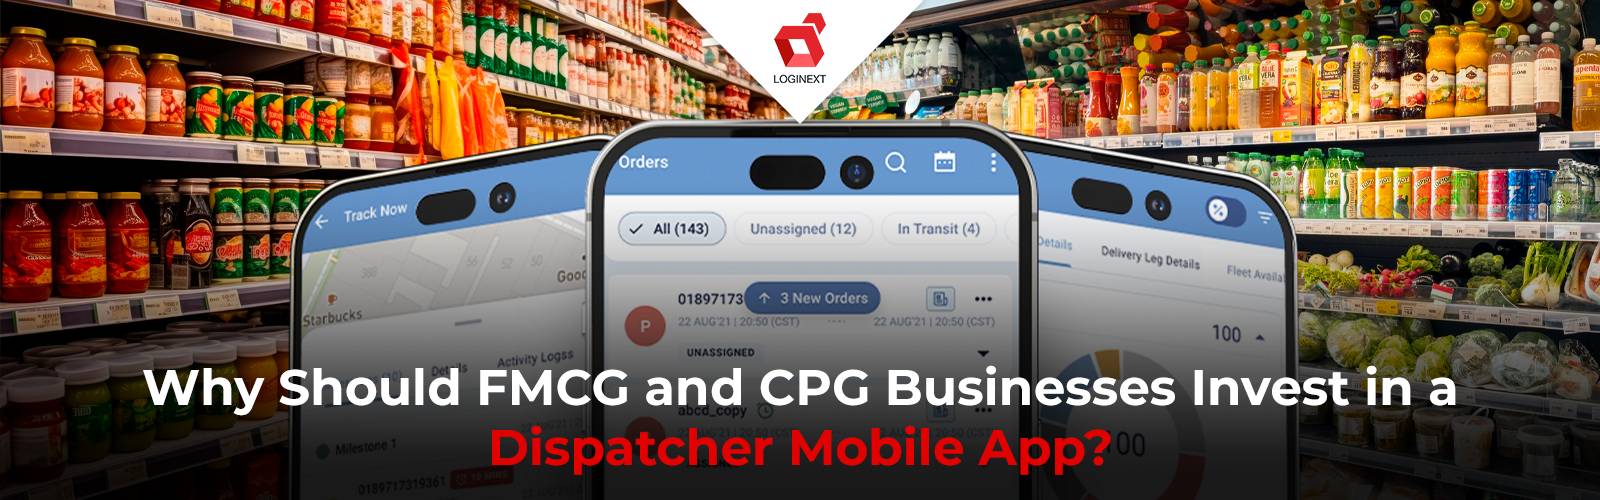 De ce ar trebui companiile FMCG și CPG să investească într-o aplicație mobilă Dispatcher?